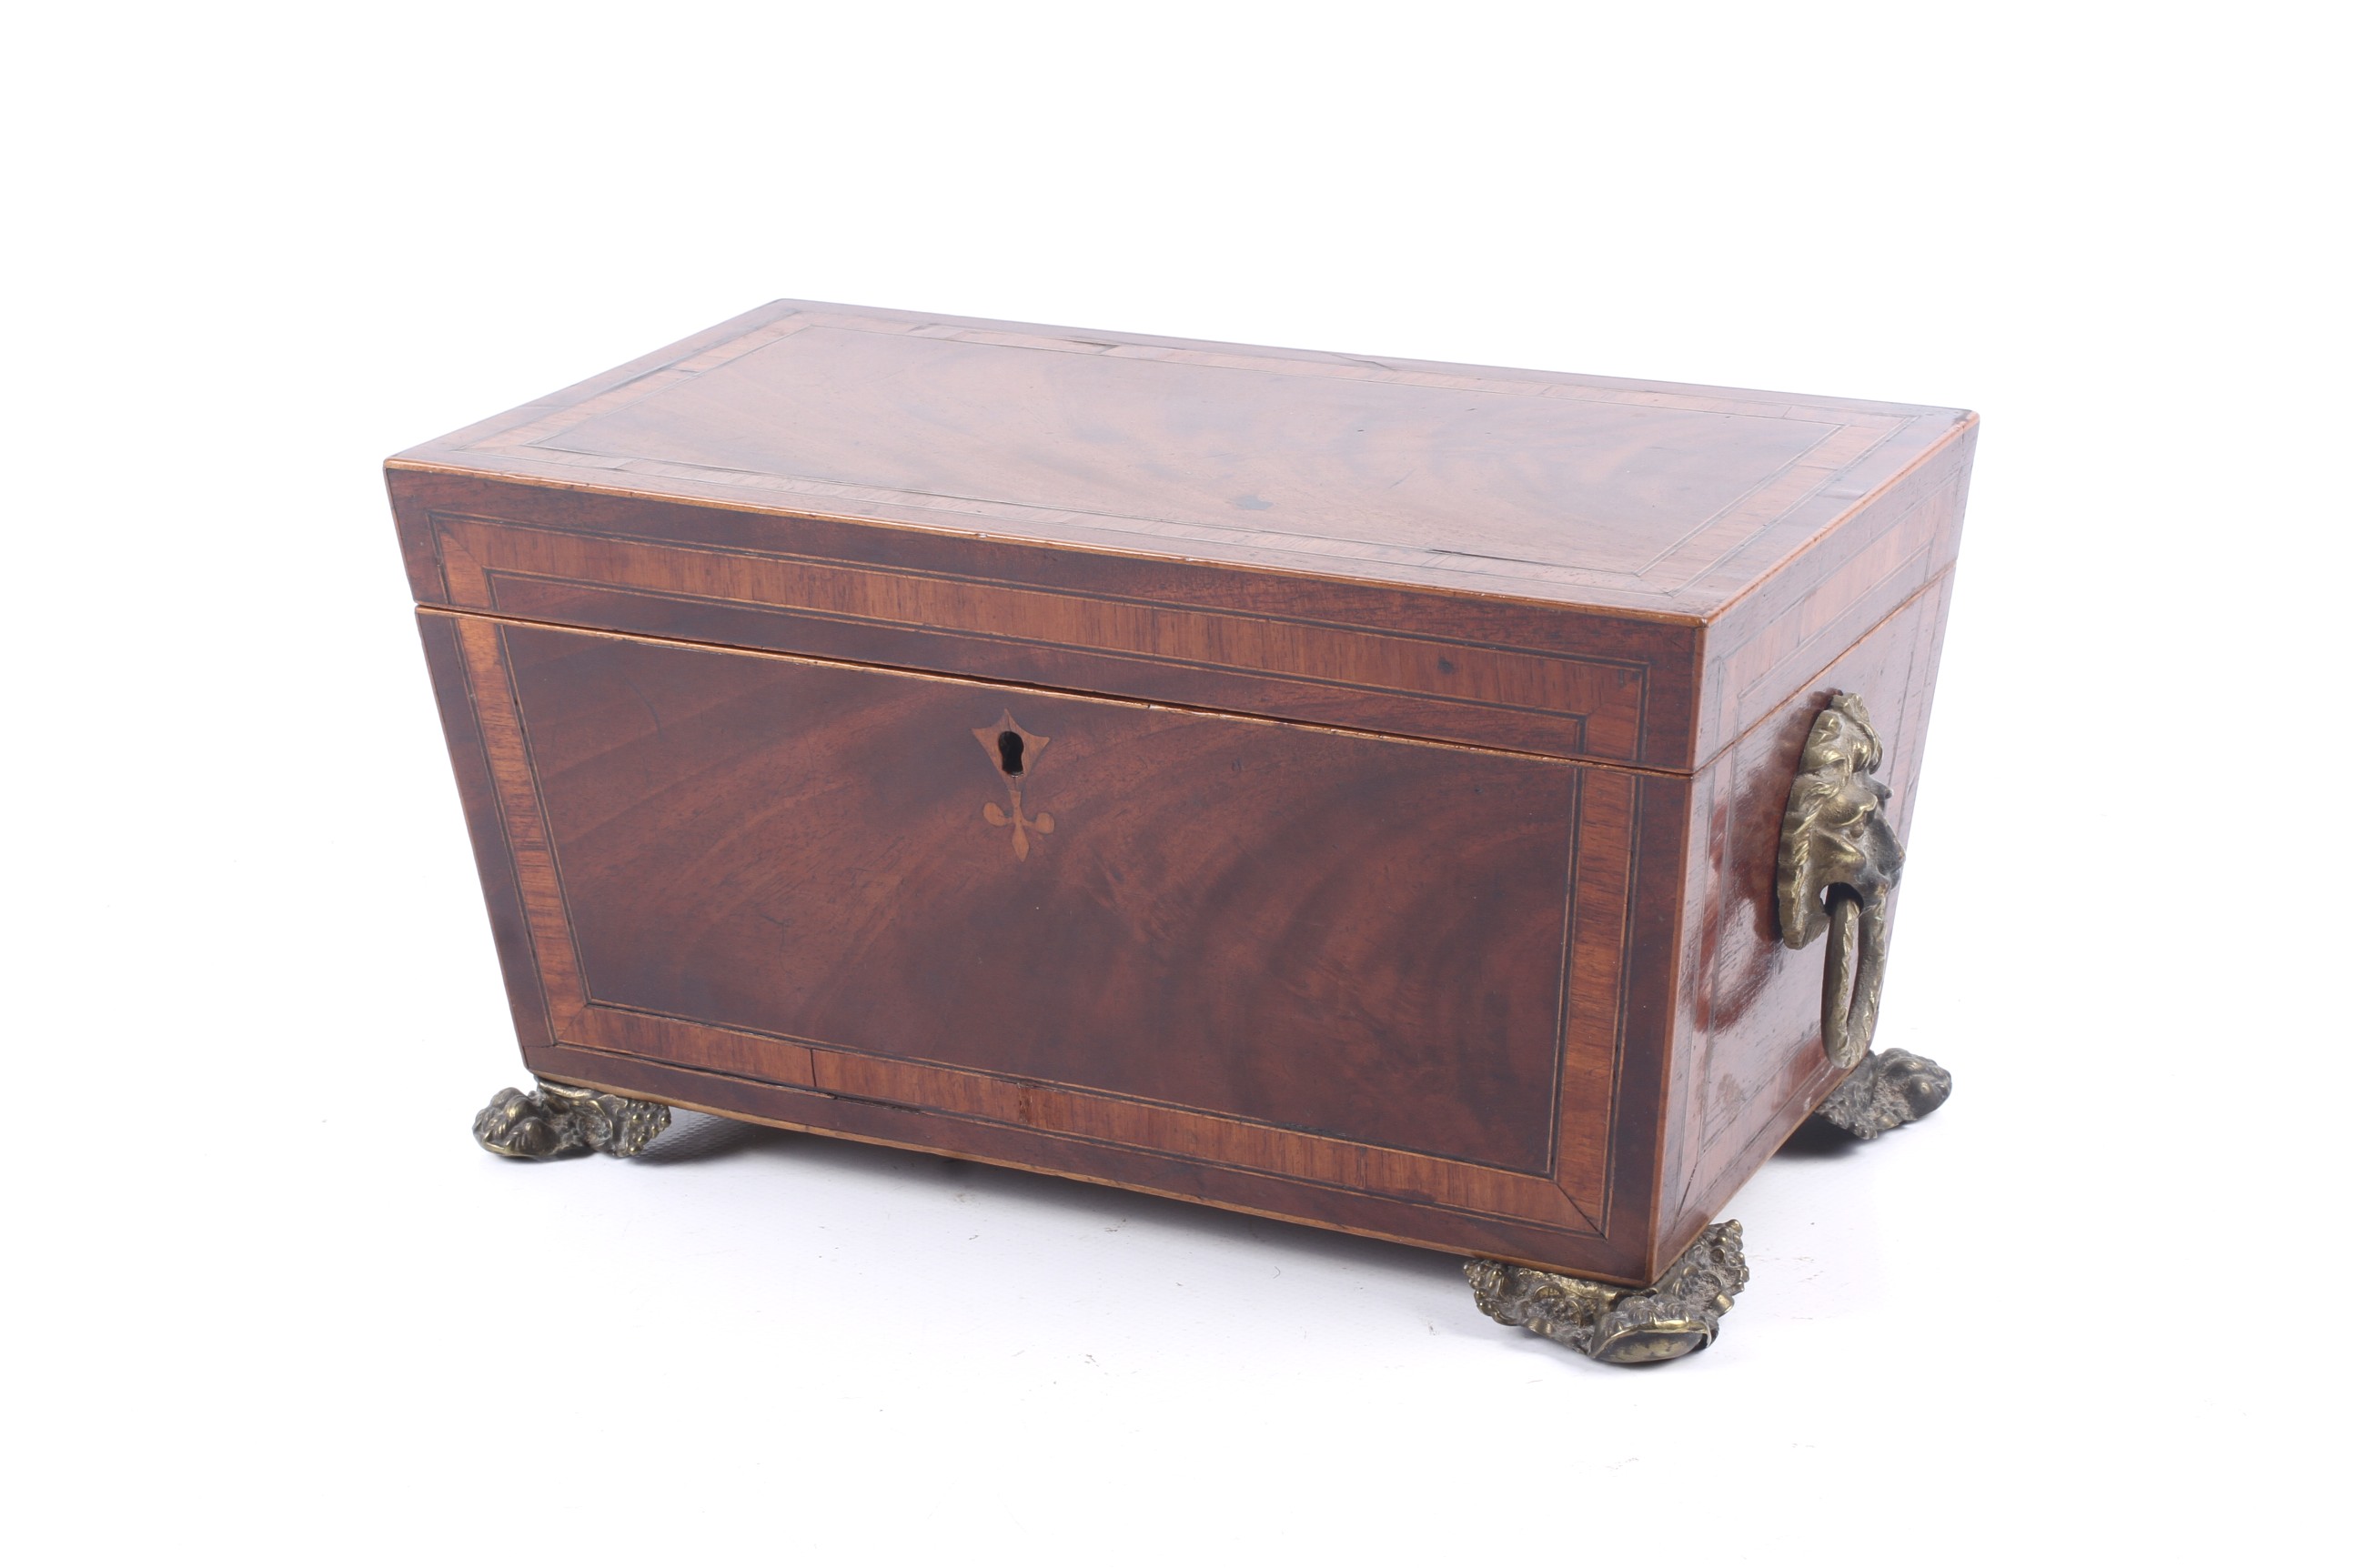 A 19th century inlaid mahogany tea caddy.